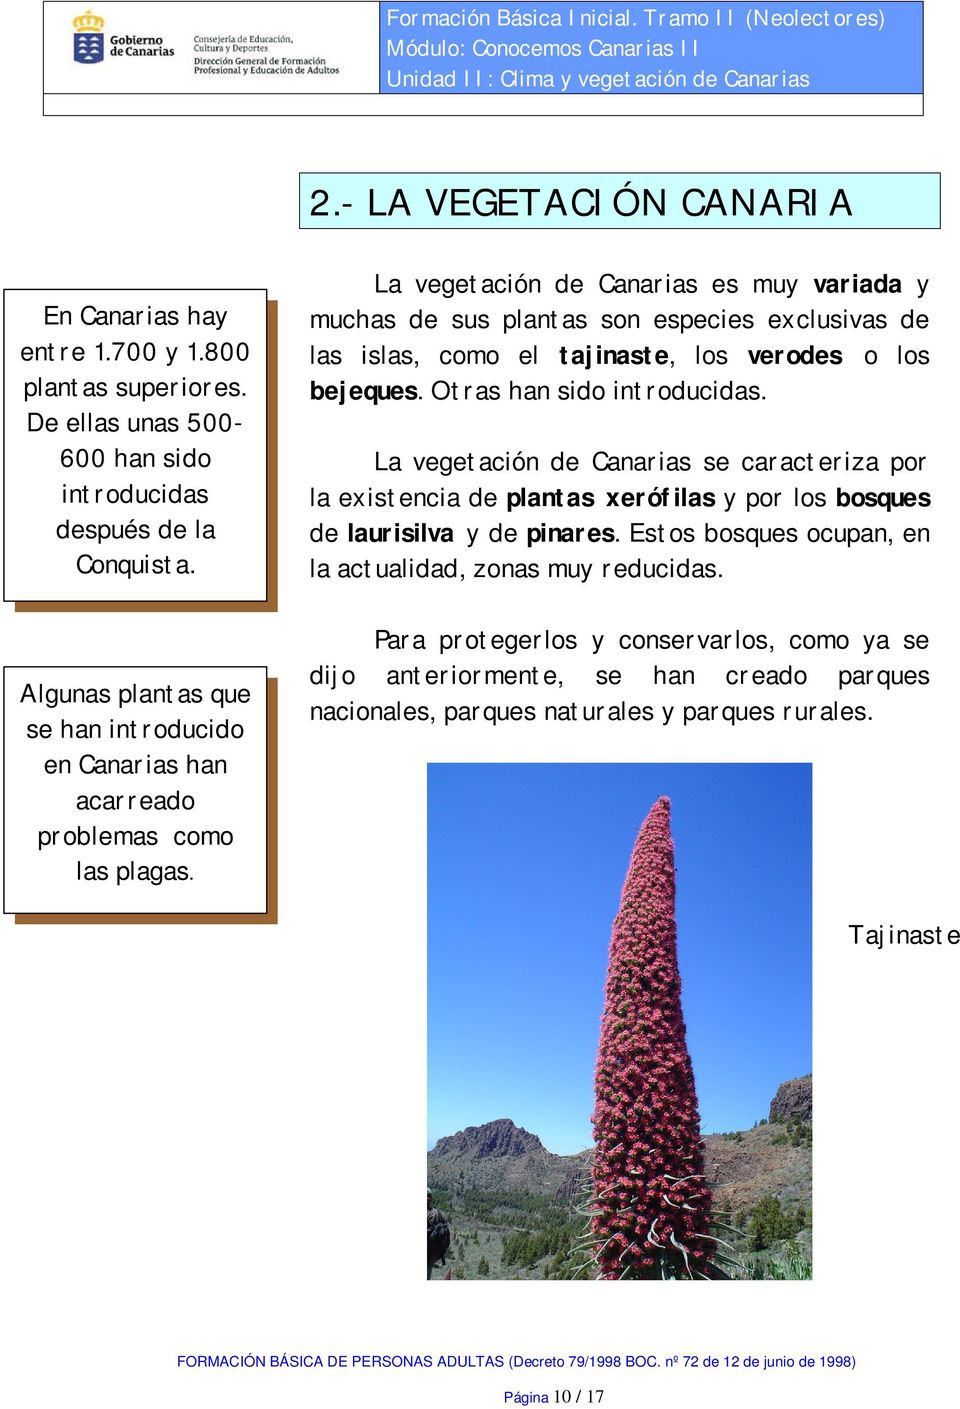 La vegetación de Canarias es muy variada y muchas de sus plantas son especies exclusivas de las islas, como el tajinaste, los verodes o los bejeques. Otras han sido introducidas.